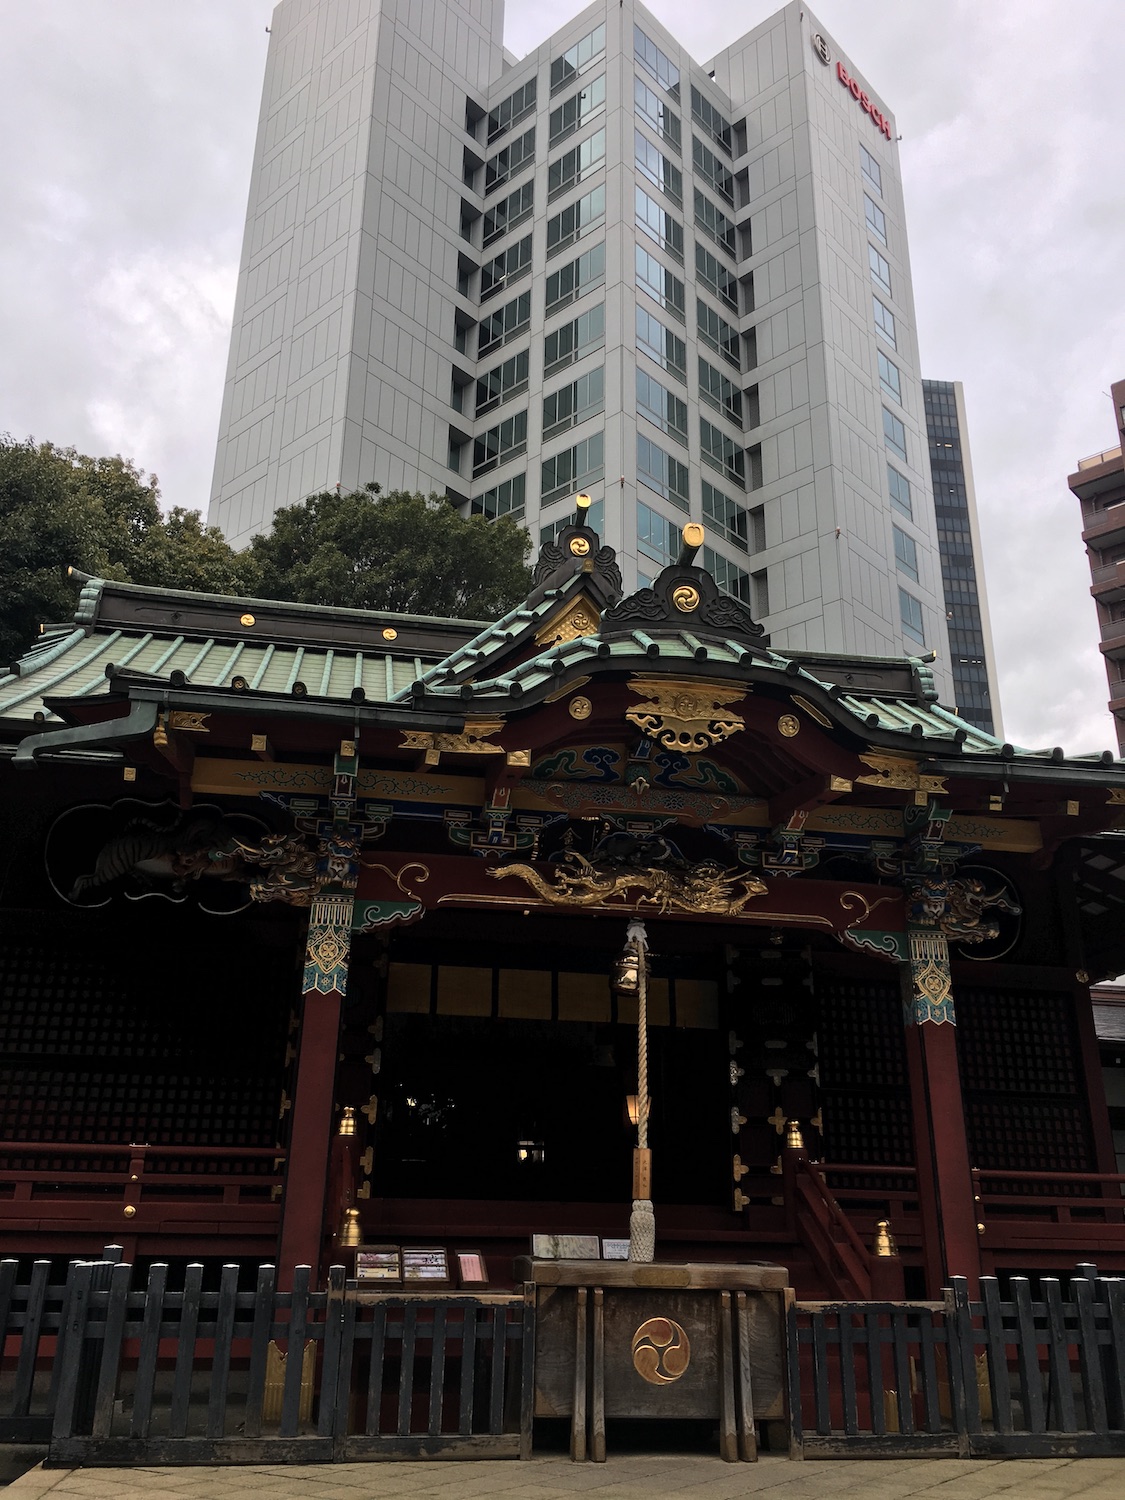 歴史深い社殿と現代的なビルのコントラストが渋谷らしい。